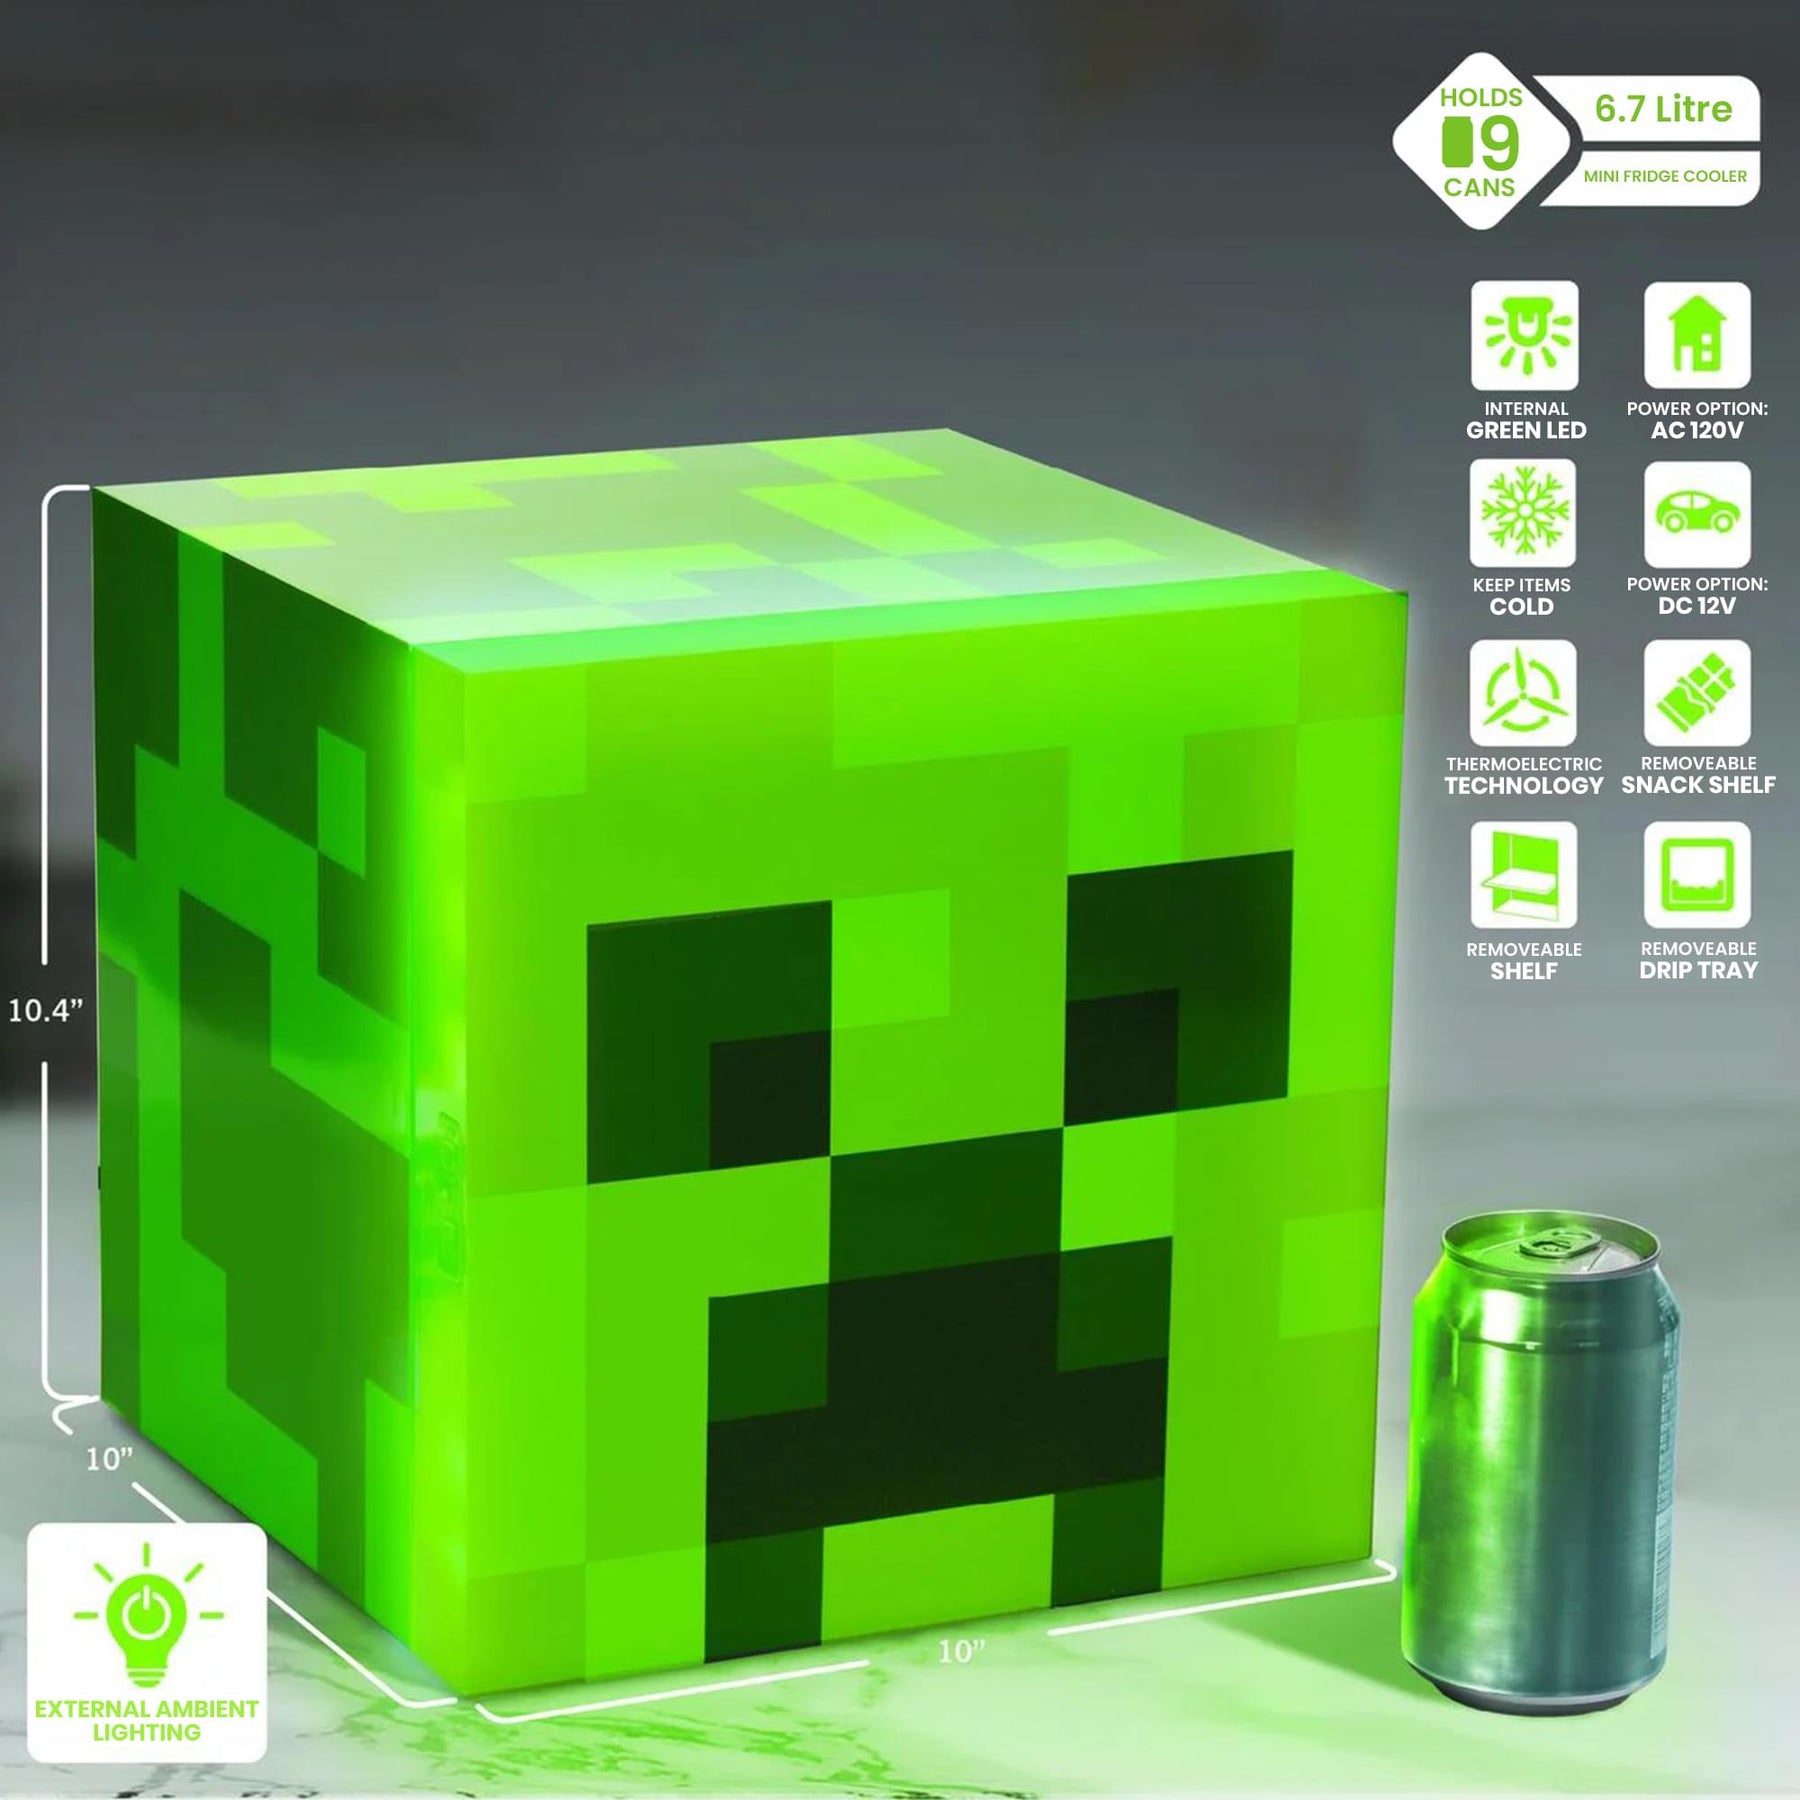 Minecraft Green Creeper 9 Can Mini Fridge 6.7L 10.4 x 10 x 10